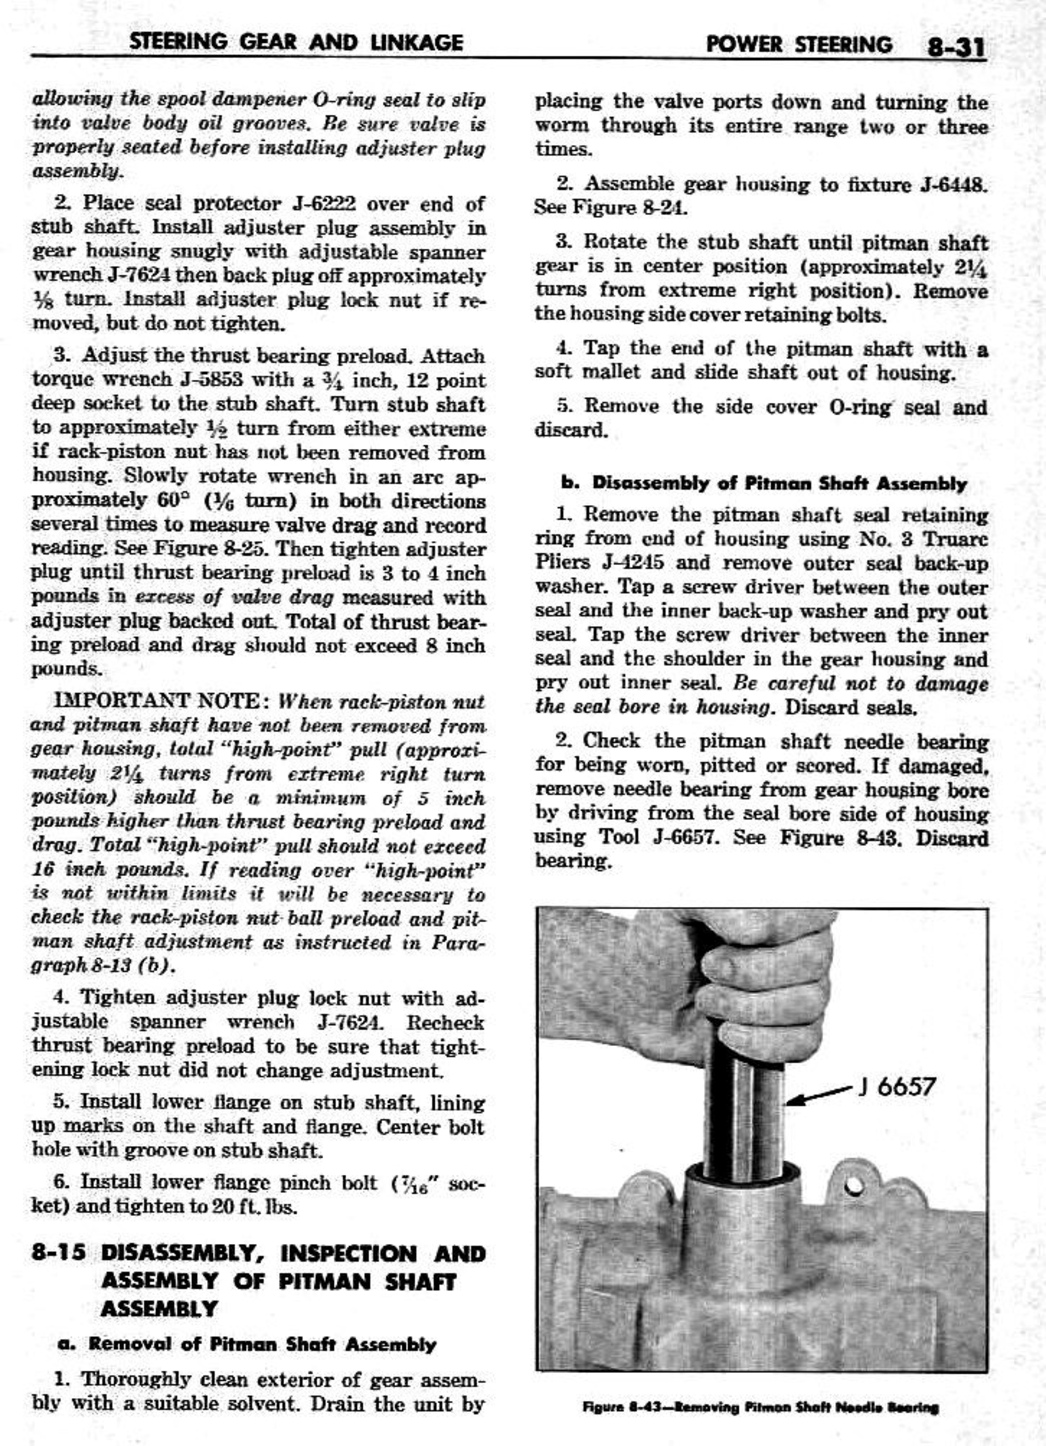 n_09 1959 Buick Shop Manual - Steering-031-031.jpg